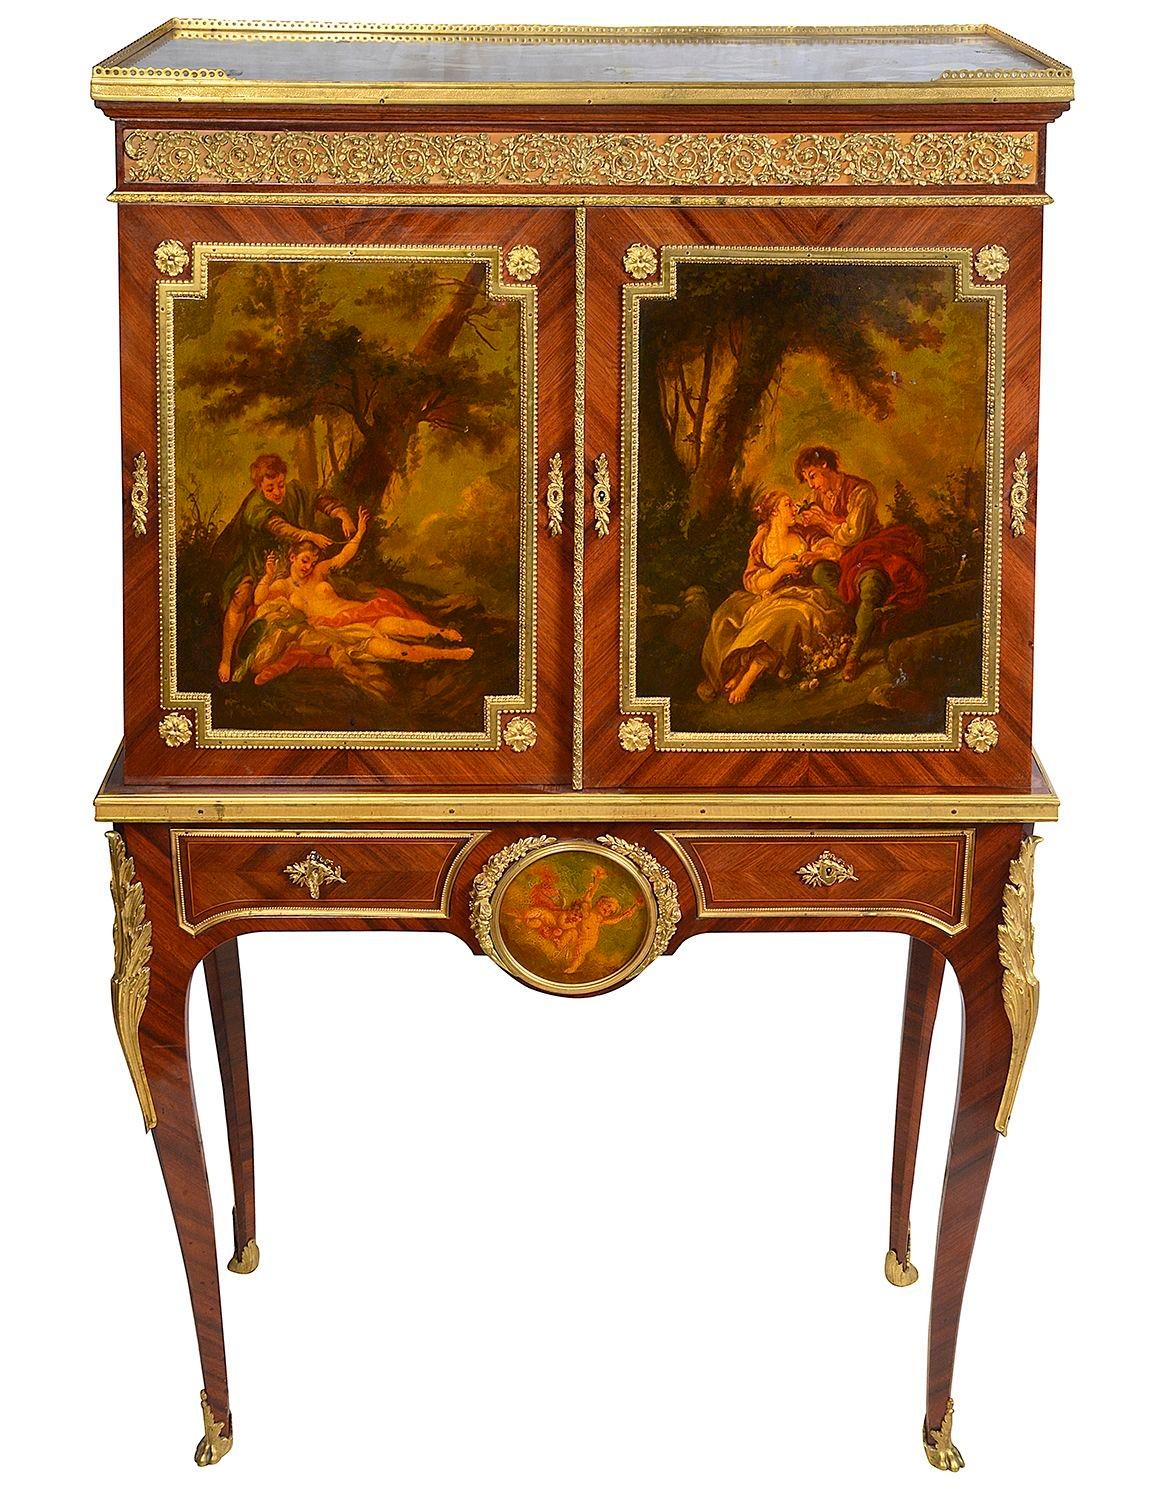 Très beau meuble d'appoint de la fin du XIXe siècle en bois de roi français, monté sur pied et orné de bronze doré. Le plateau en marbre d'origine est surmonté d'une galerie en laiton percée de trois quarts de cercle. Une paire de portes Verni